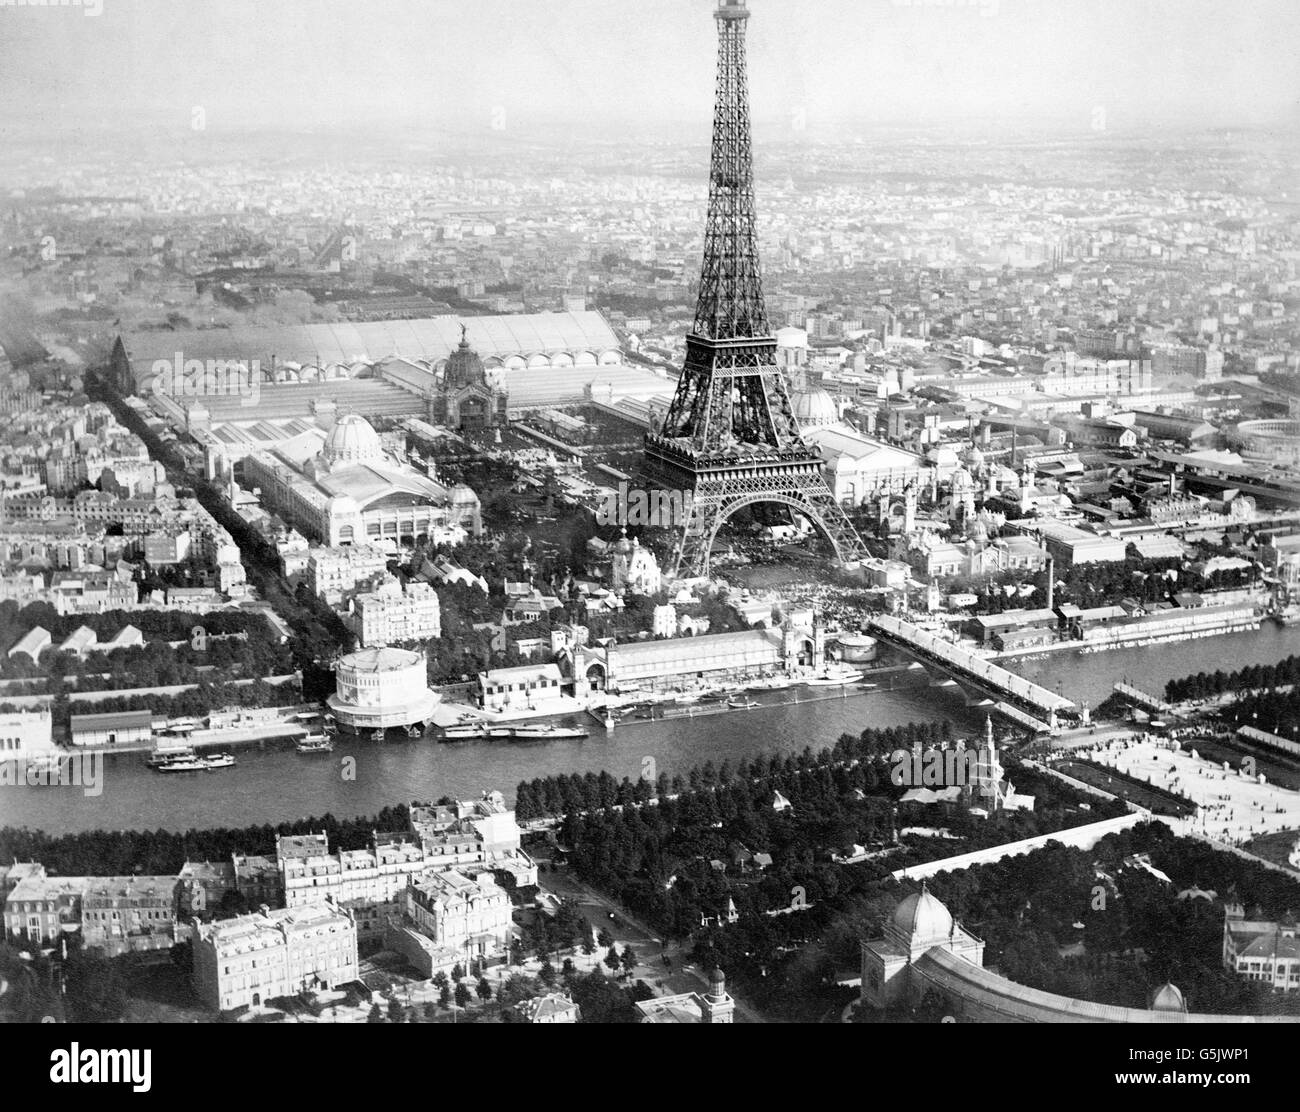 Weltausstellung Paris 1889. Luftaufnahme von Paris, aus einem Ballon, zeigt am Ufer, der Eiffelturm und die Gebäude der Weltausstellung von 1889.  Foto von Alphonse Liébert, 1889. Stockfoto